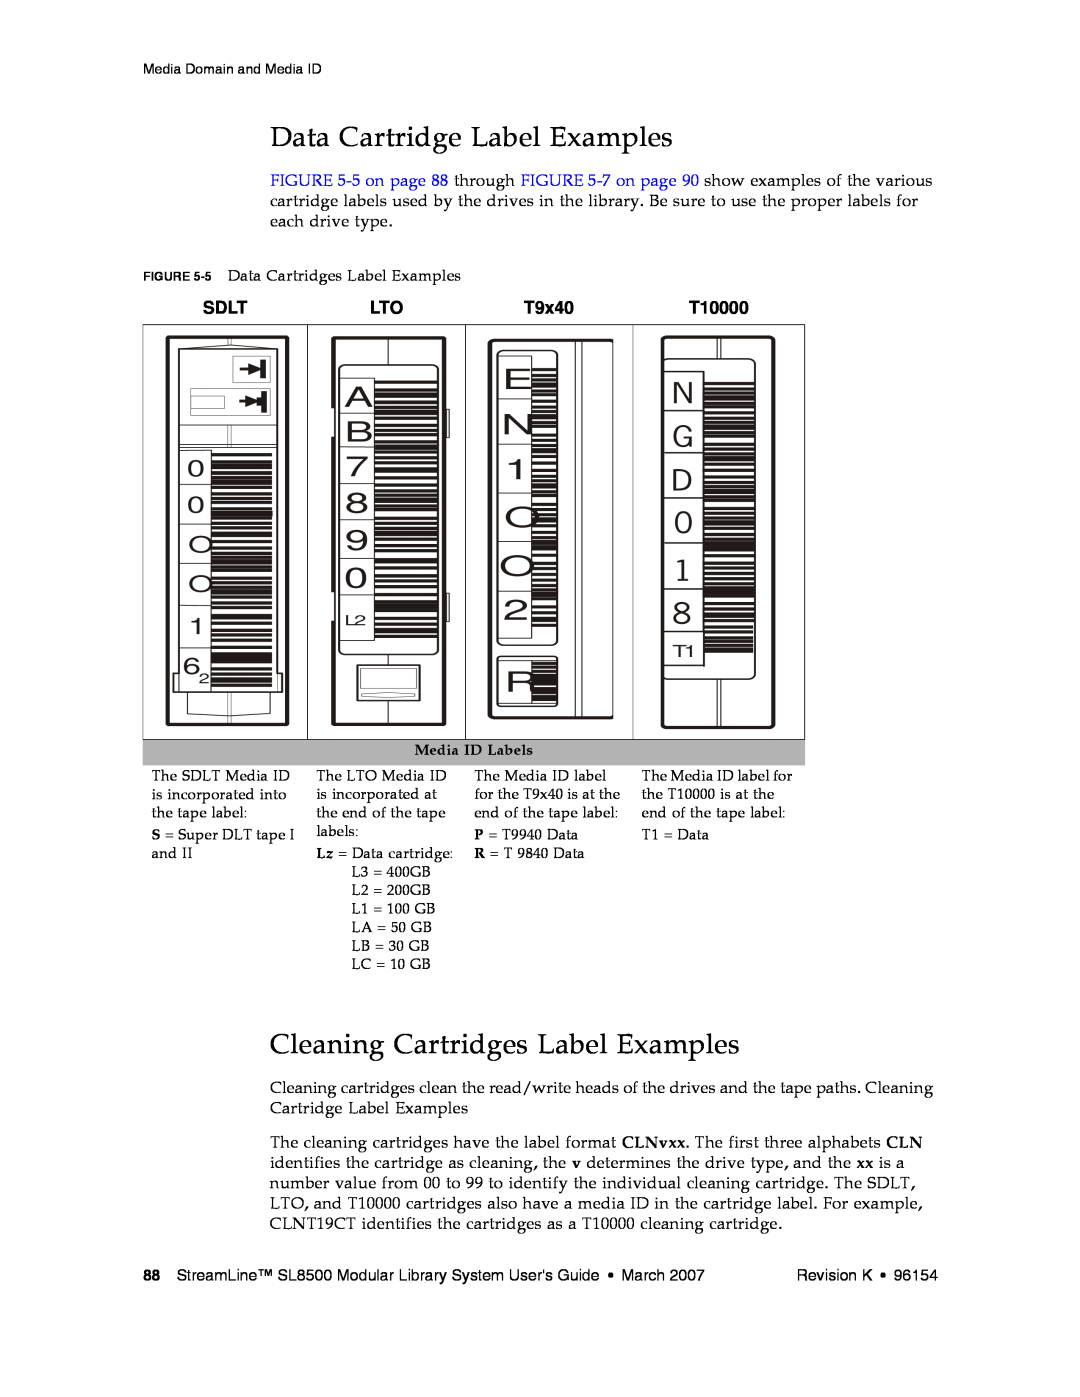 Sun Microsystems SL8500 Data Cartridge Label Examples, Cleaning Cartridges Label Examples, Sdlt, T9x40, T10000, O O 1 